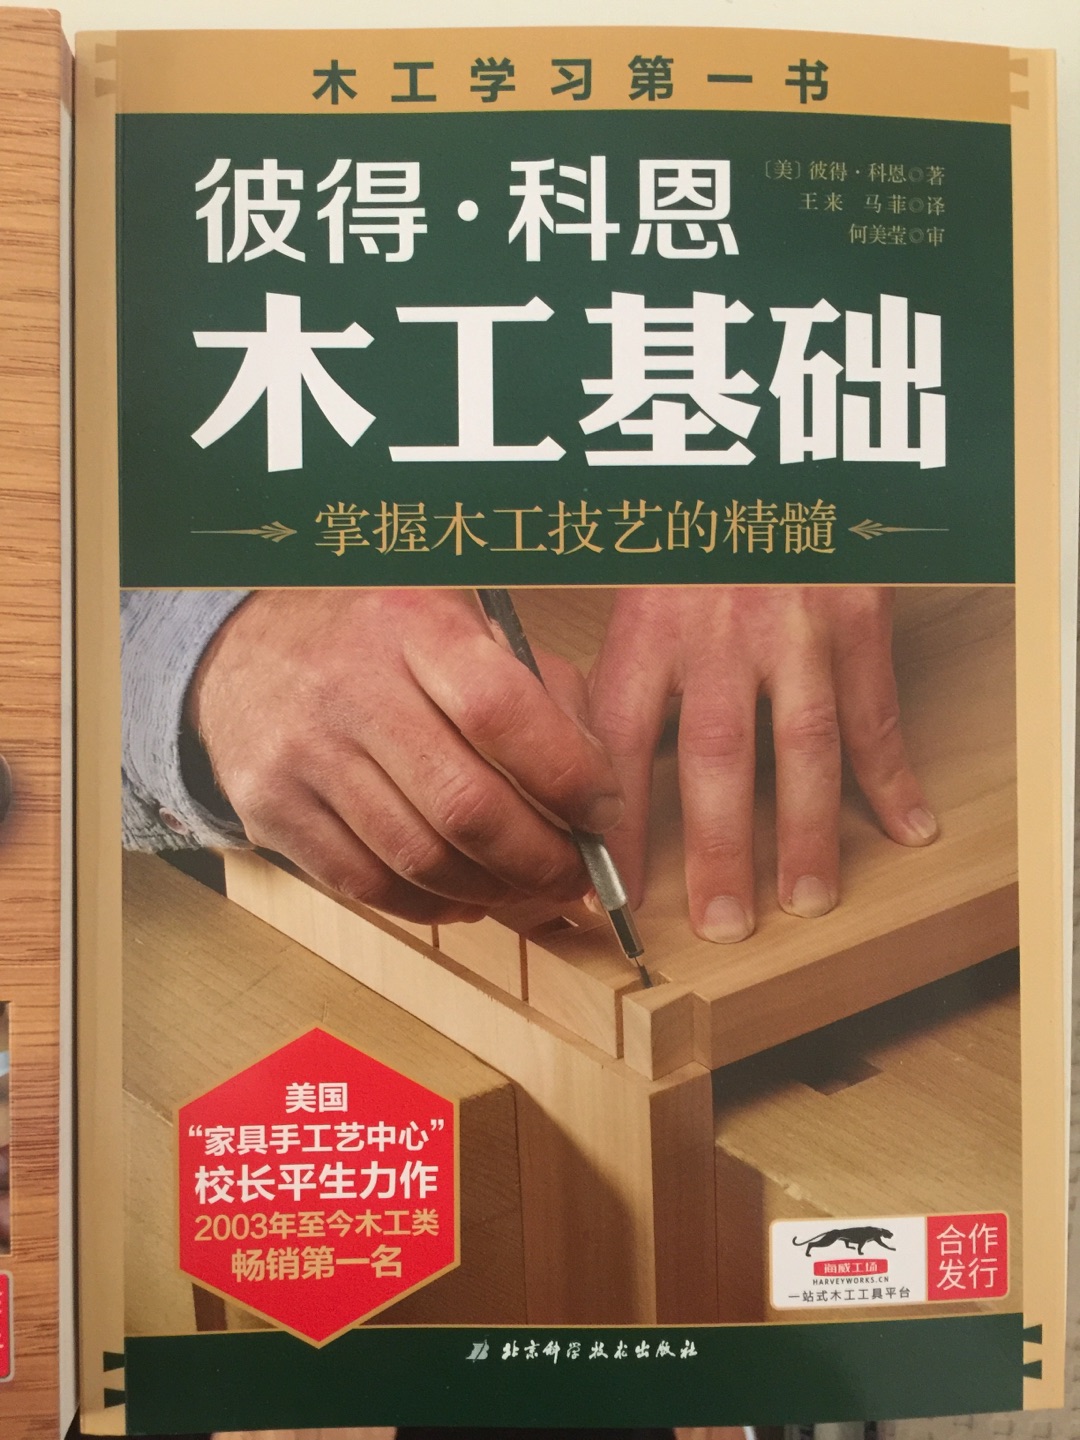 非常实用的一本书，很多东西都可以从头开始学起，应该说是一个，对于木工非常喜爱的人的入门的，很重要的一本书，打算以后就靠他自己做家具了。